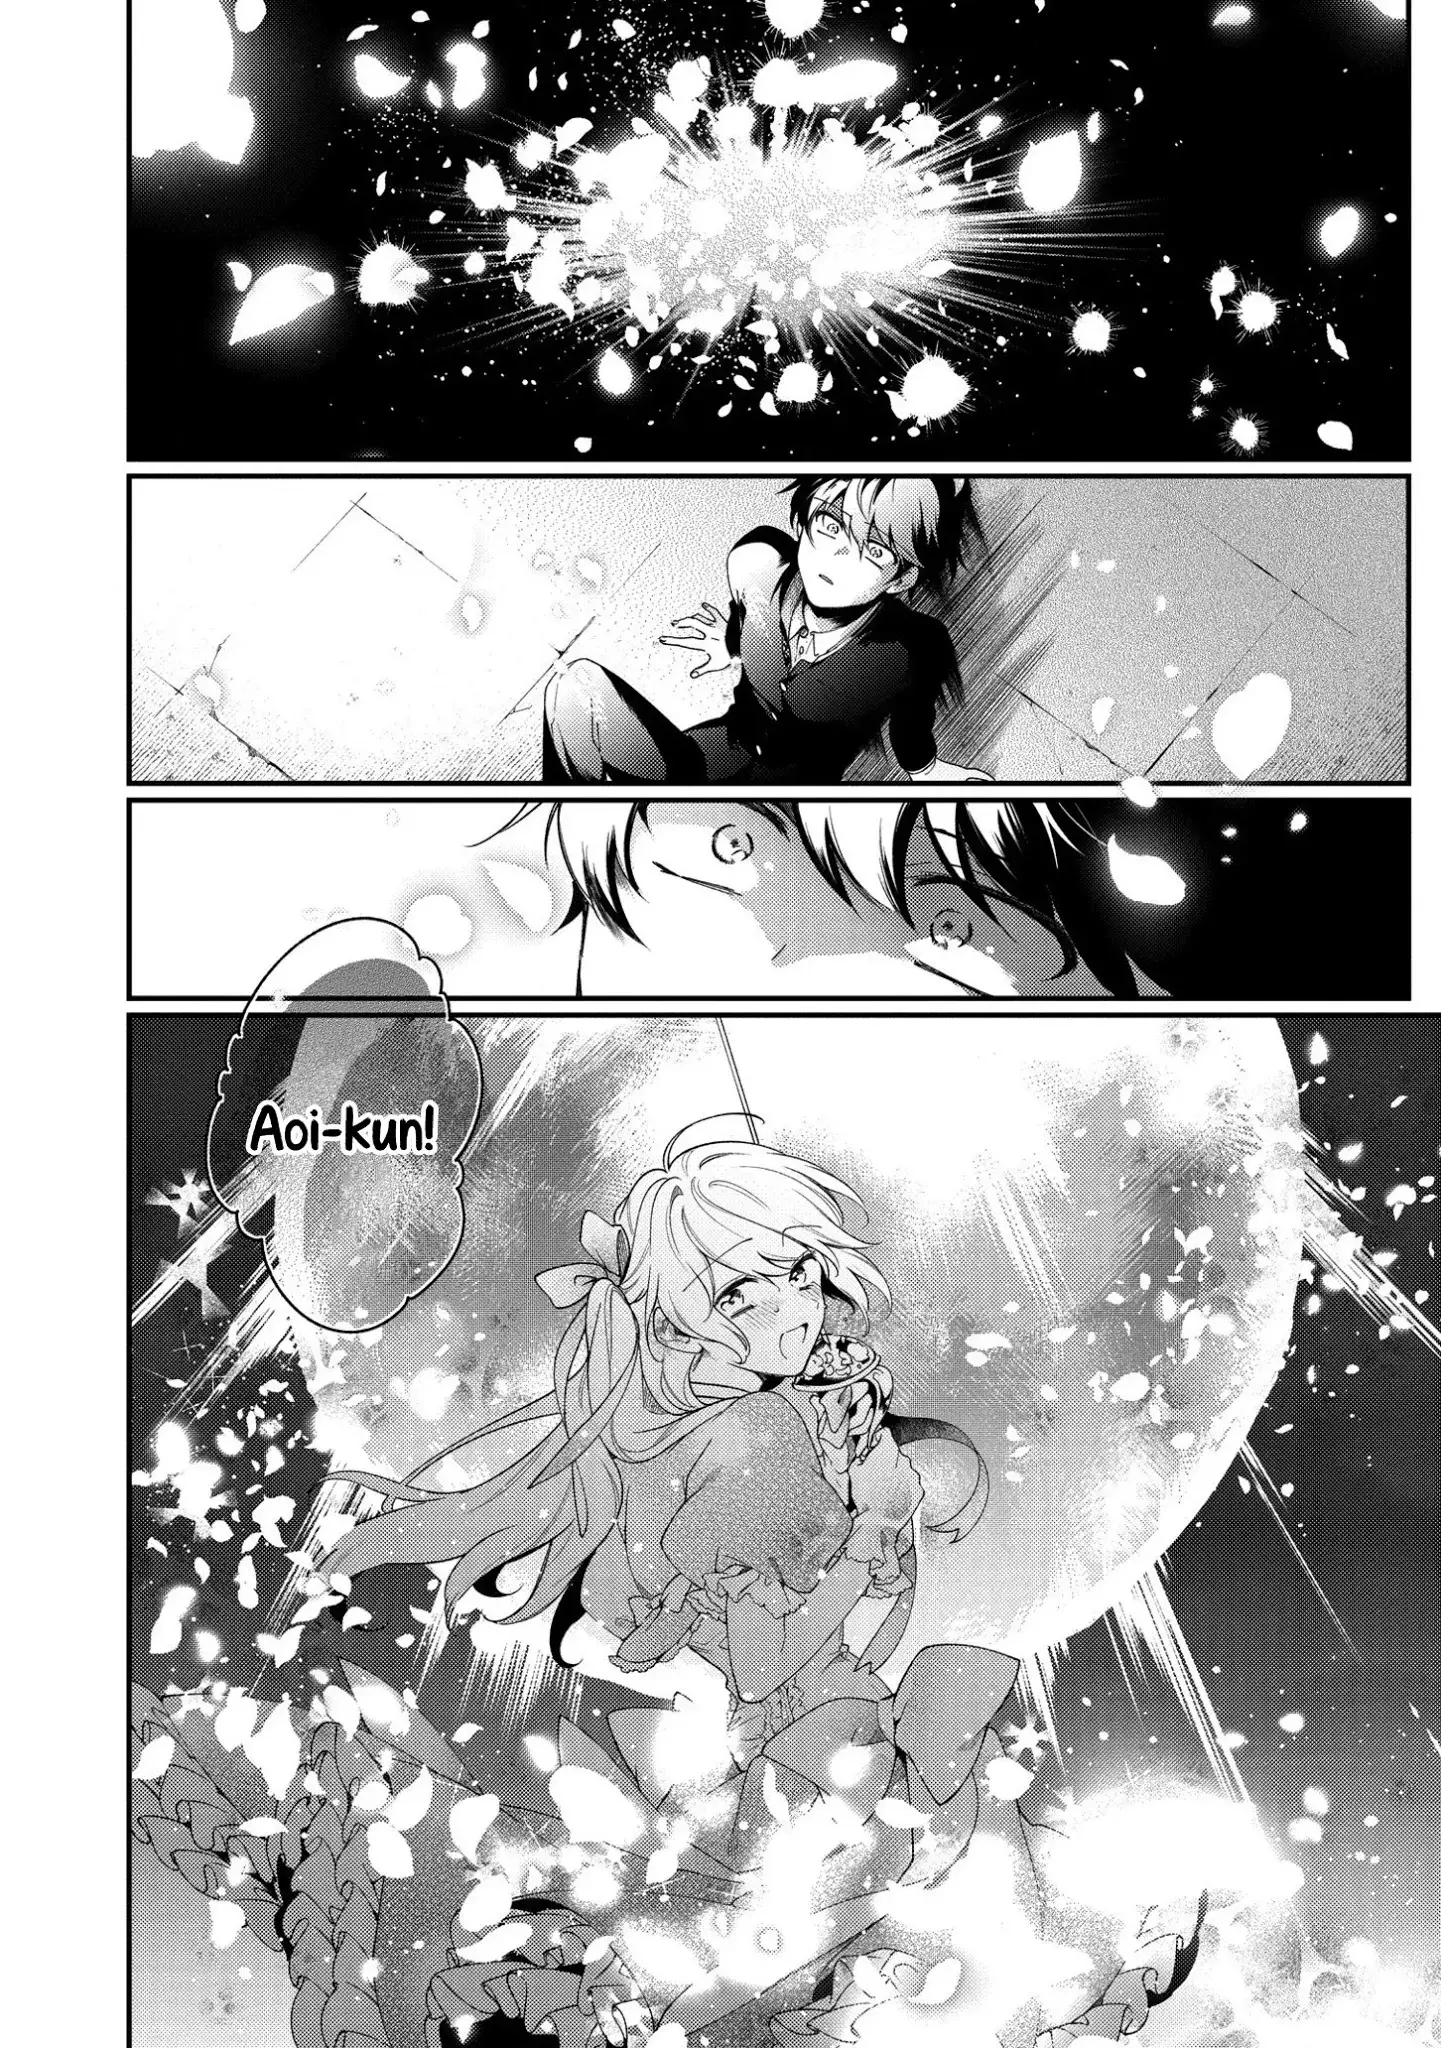 No Match For Aoi-Kun - 1 page 40